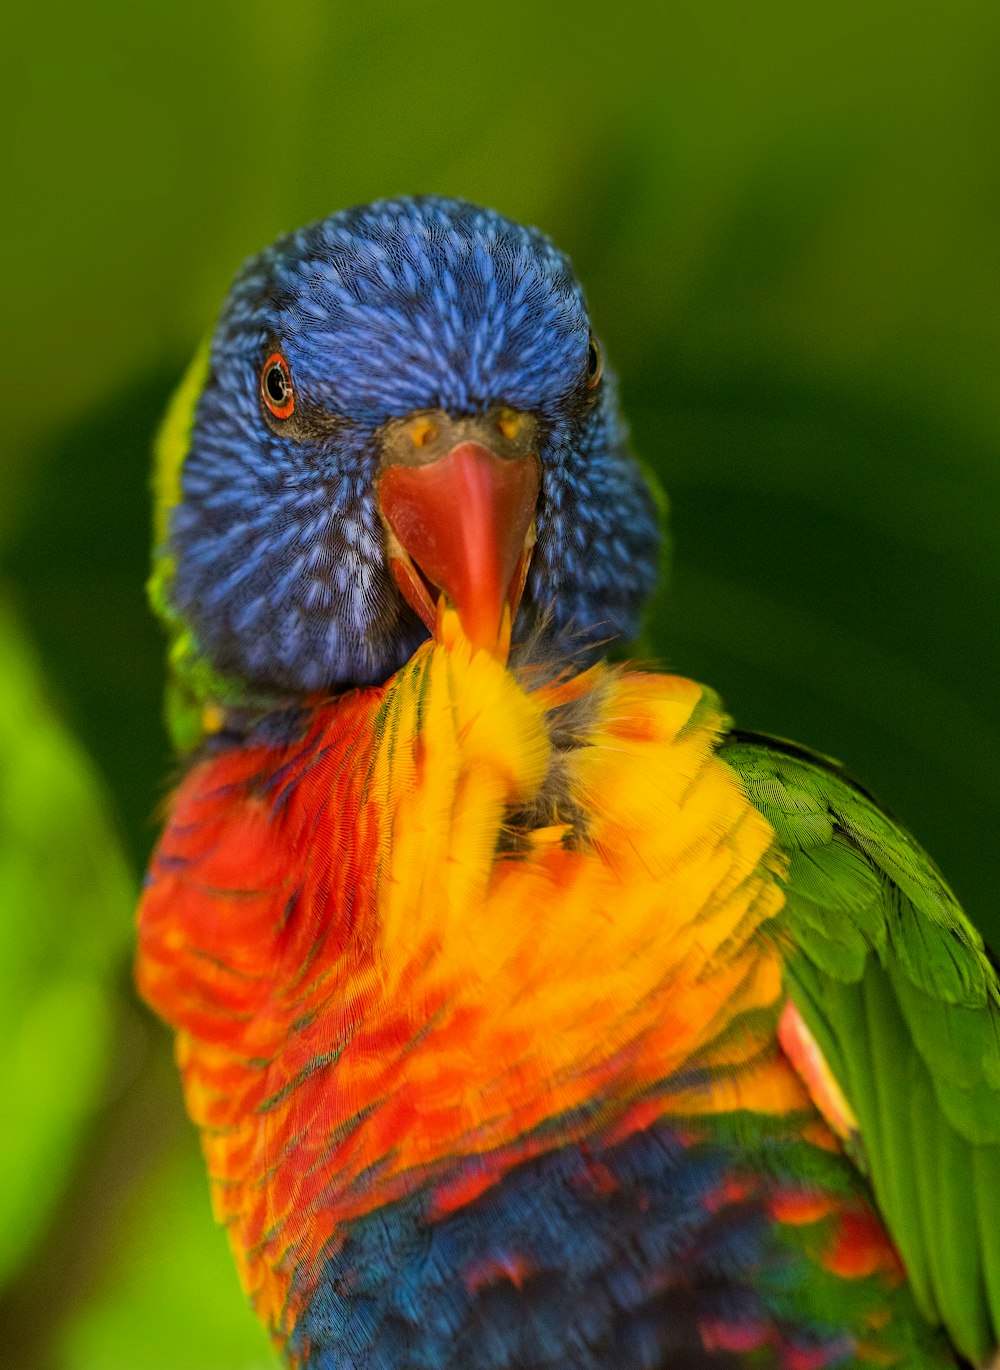 Flachfokusfotografie eines mehrfarbigen Vogels